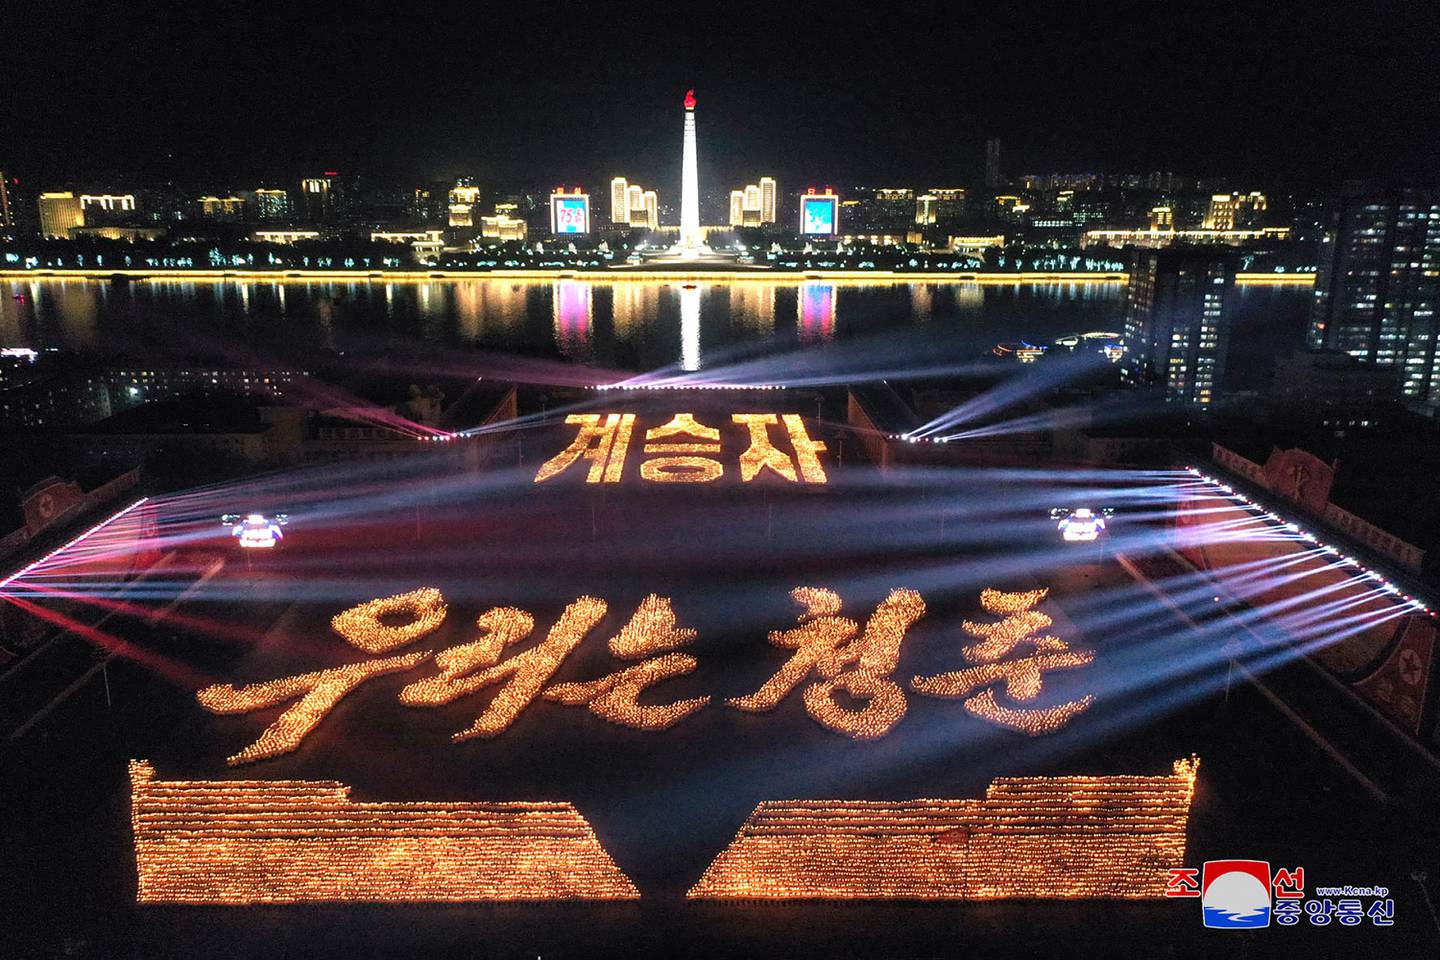 Fotografía del 8 de setiembre publicada por la Agencia Central de Noticias Coreana (KCNA) oficial de Corea del Norte que muestra una Gala de Antorchas de Young Vanguard, como evento de celebración para conmemorar el 75.º aniversario de la fundación de Corea del Norte, en Kim Plaza Il Sung en Pyongyang. Fotografía: AFP